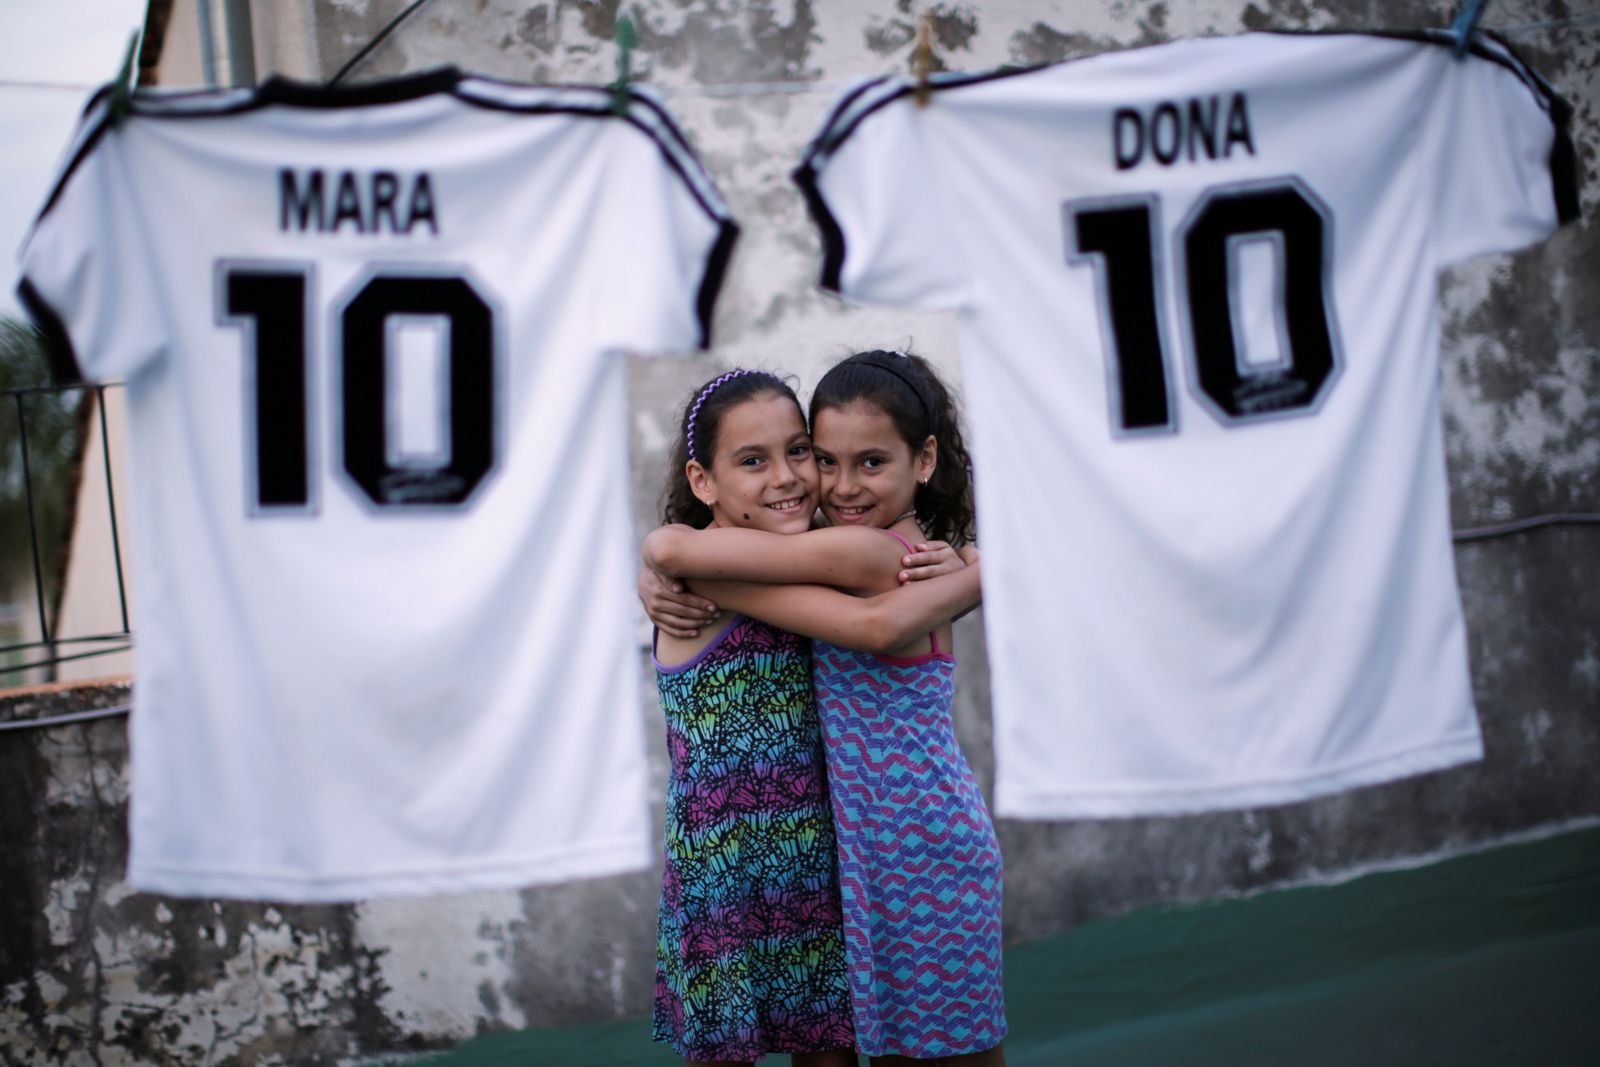 التوأمتان مارا ودونا يحتضنان بعضهما إلى جانب قميصيهما بالرقم 10، الذي كان يرتديه مارادونا - REUTERS